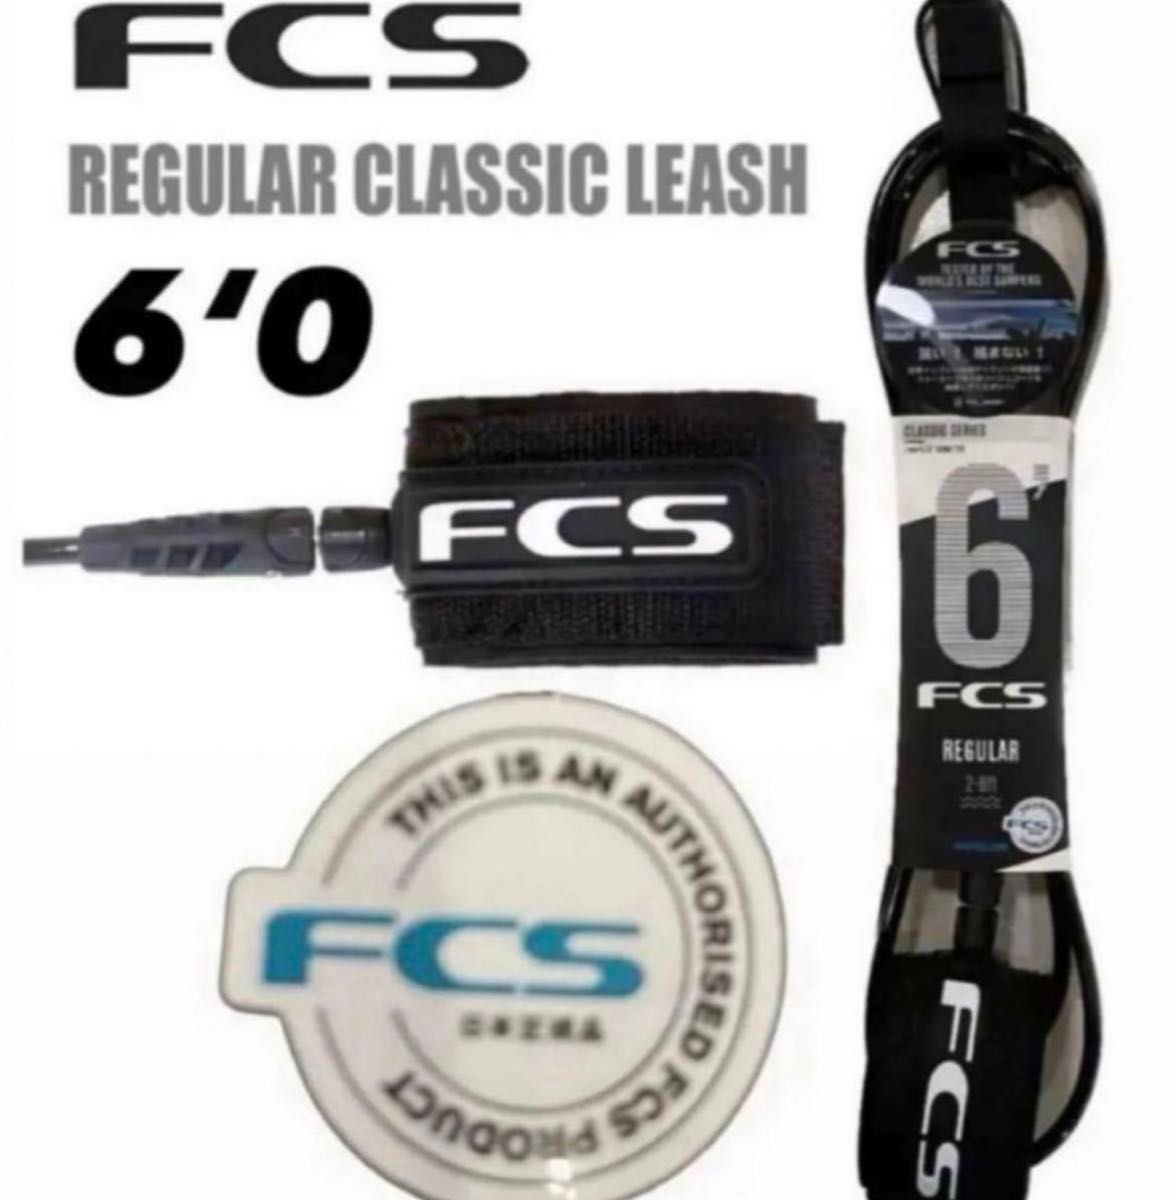 FCS 6’0 CLASSICリーシュコード新品正規販売店購入品、期間限定価格